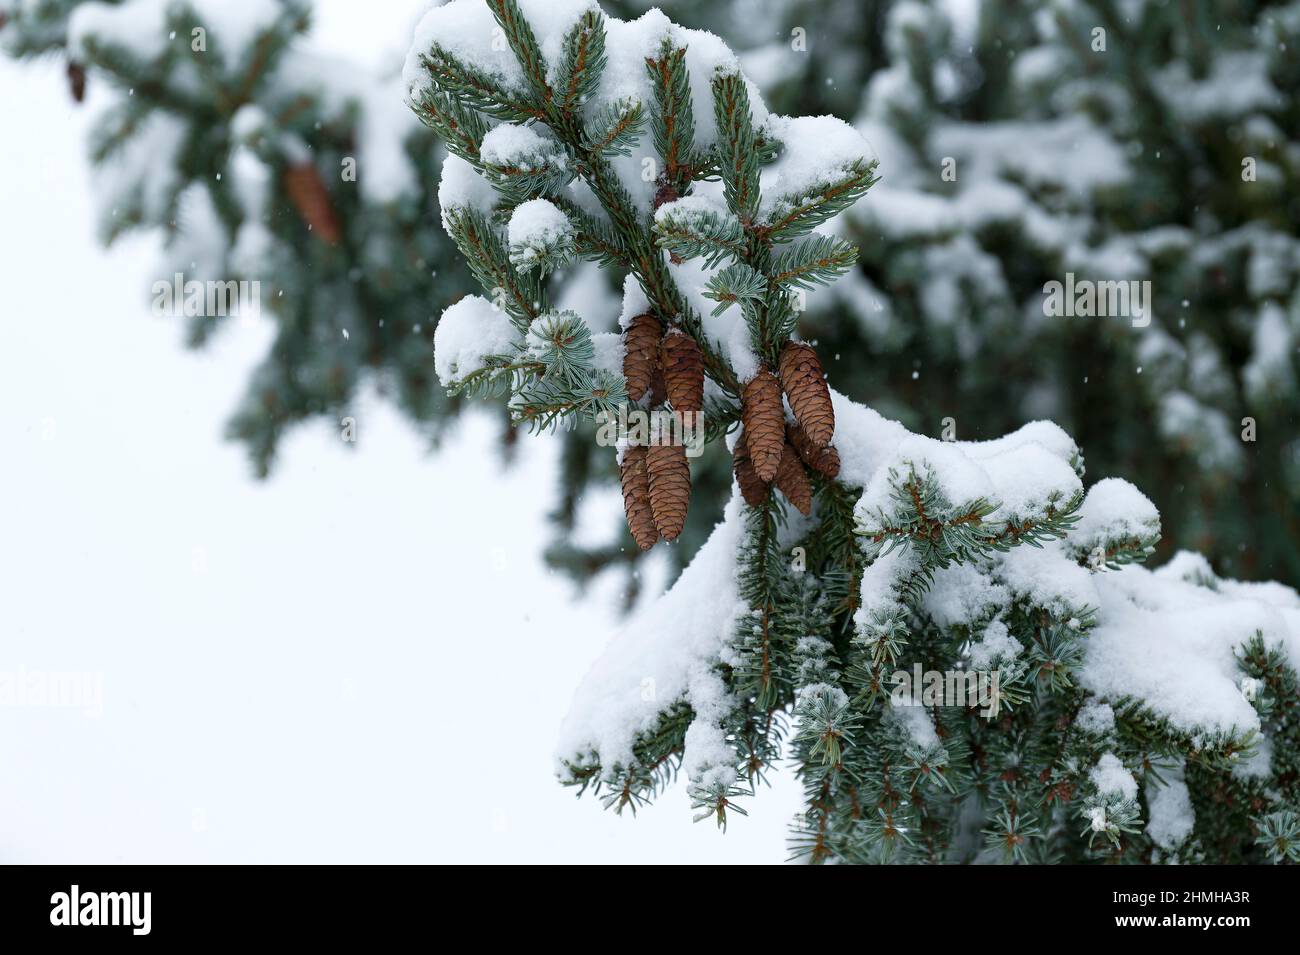 Foresta invernale, alberi innevati di abete con coni (abete serbo), nevicate, Germania, Assia Foto Stock